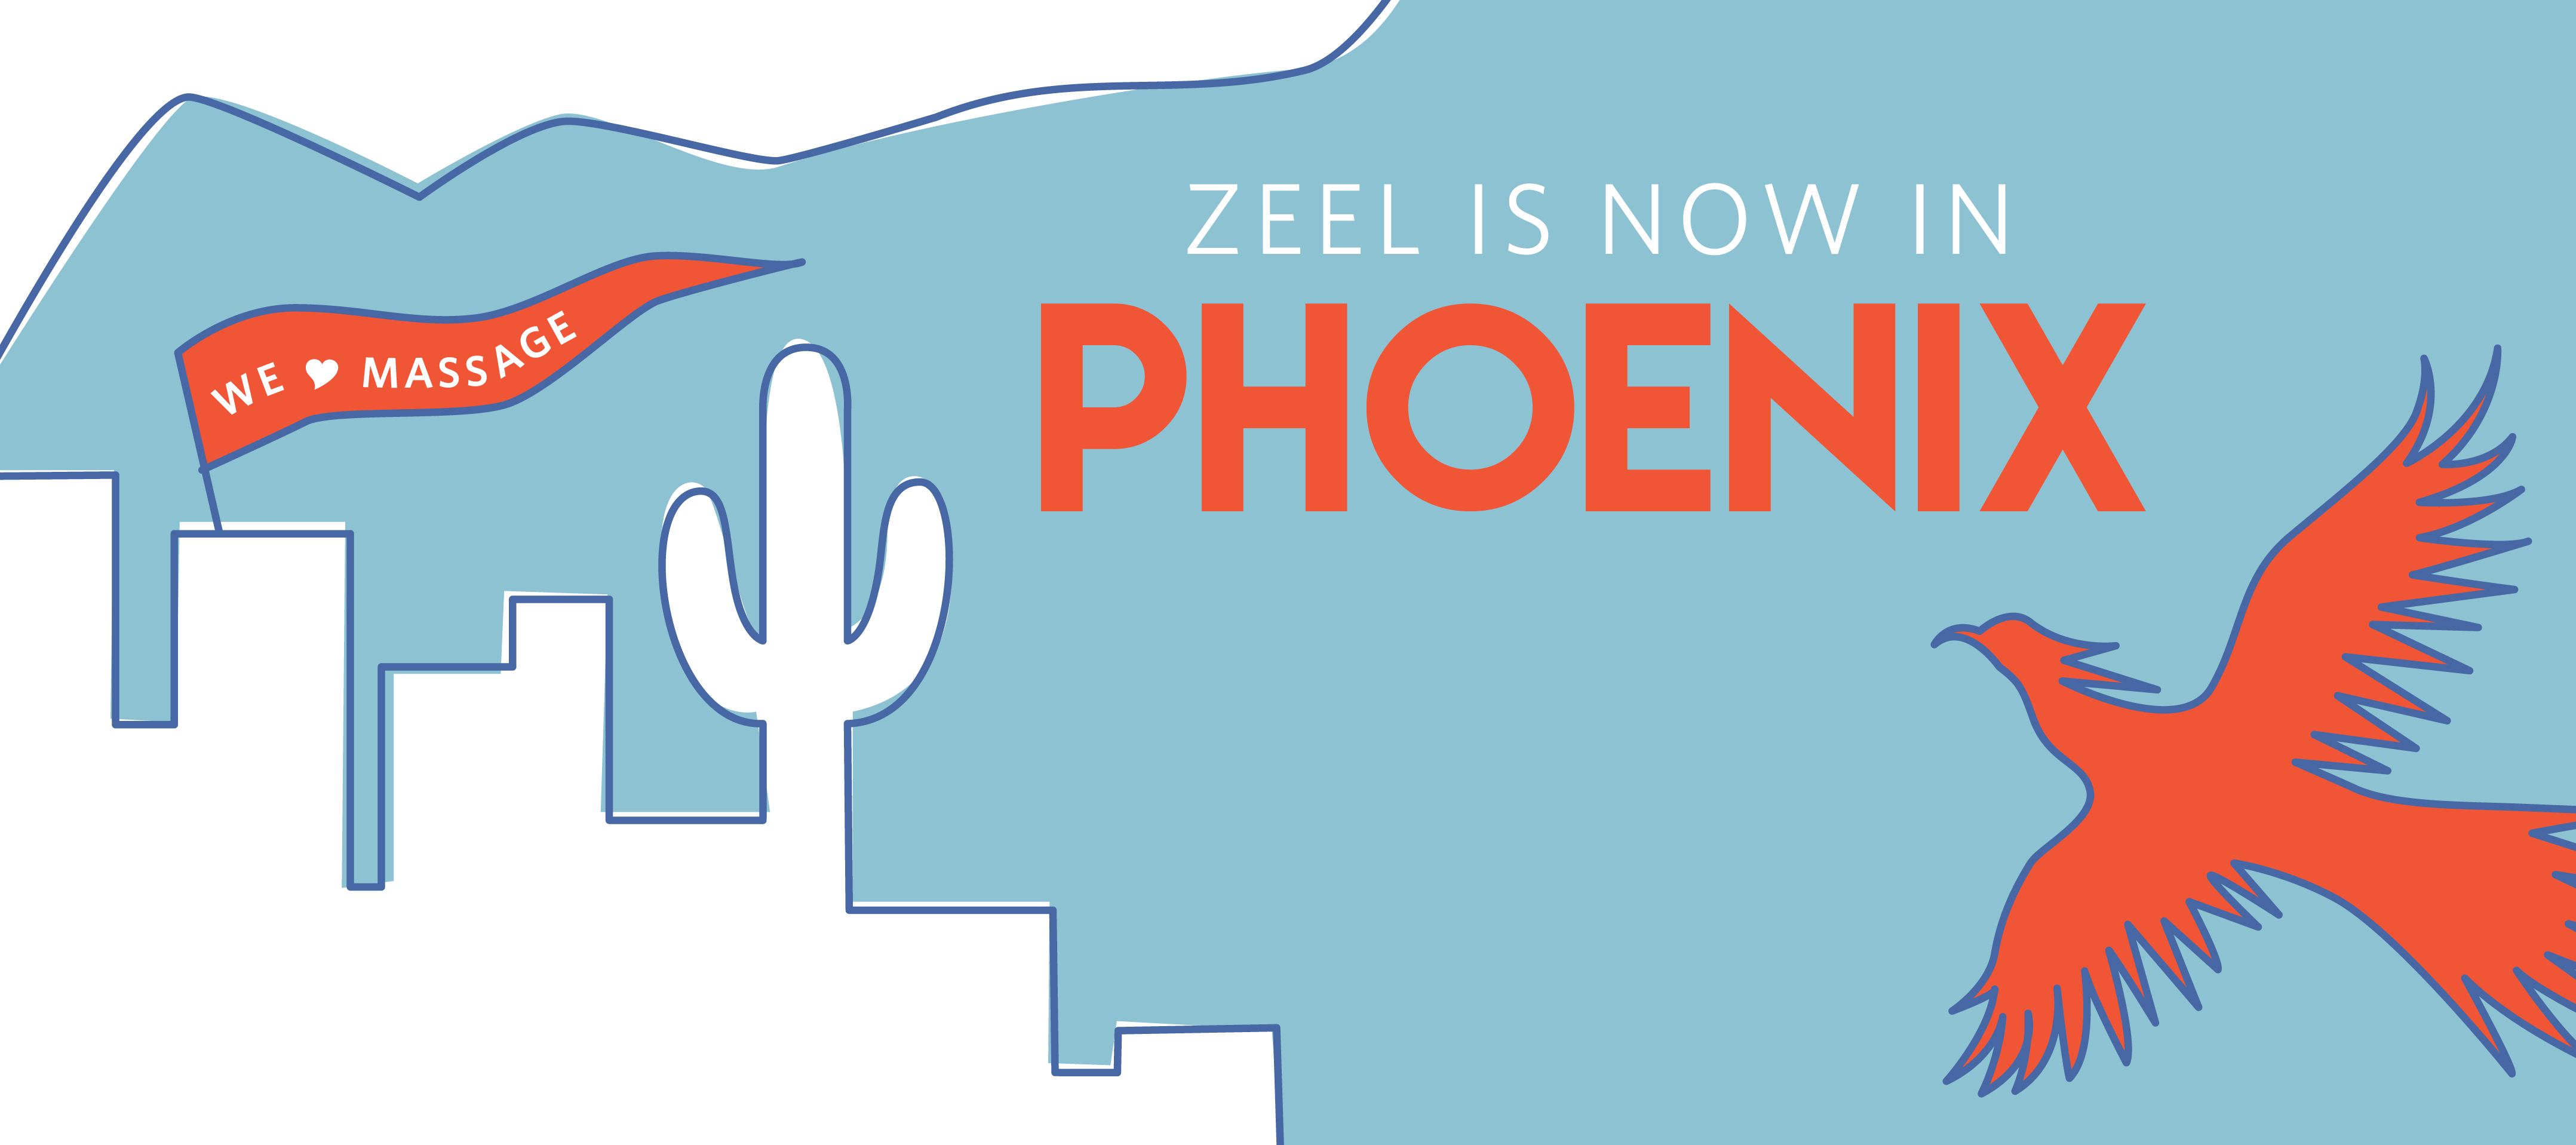 Zeel is now in Phoenix, Arizona